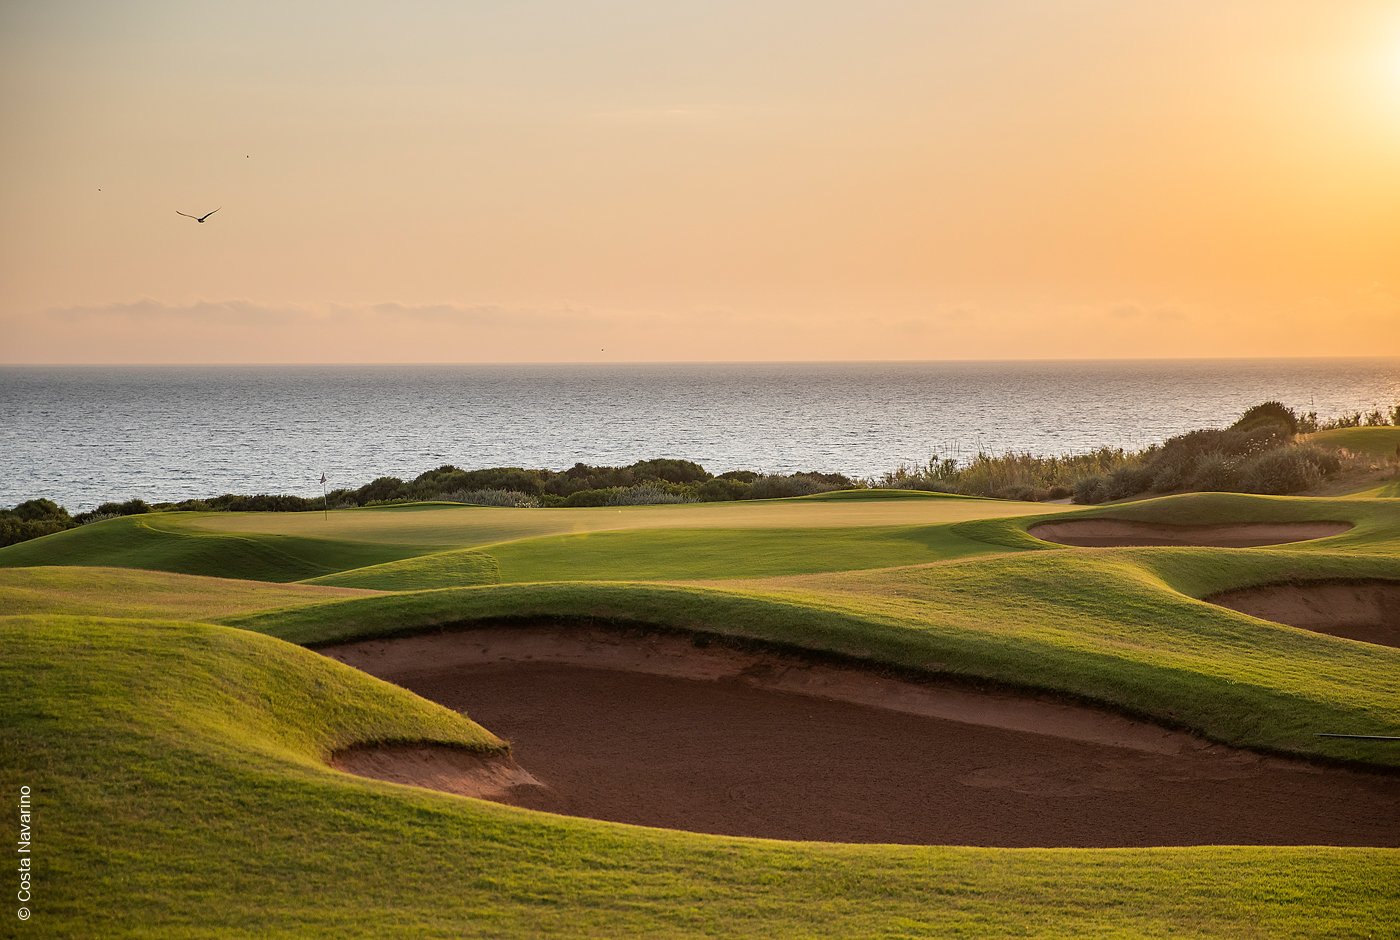 The Westin Resort Costa Navarino | Griechenland | The Dunes Golf Course | Archiv | luxuszeit.com